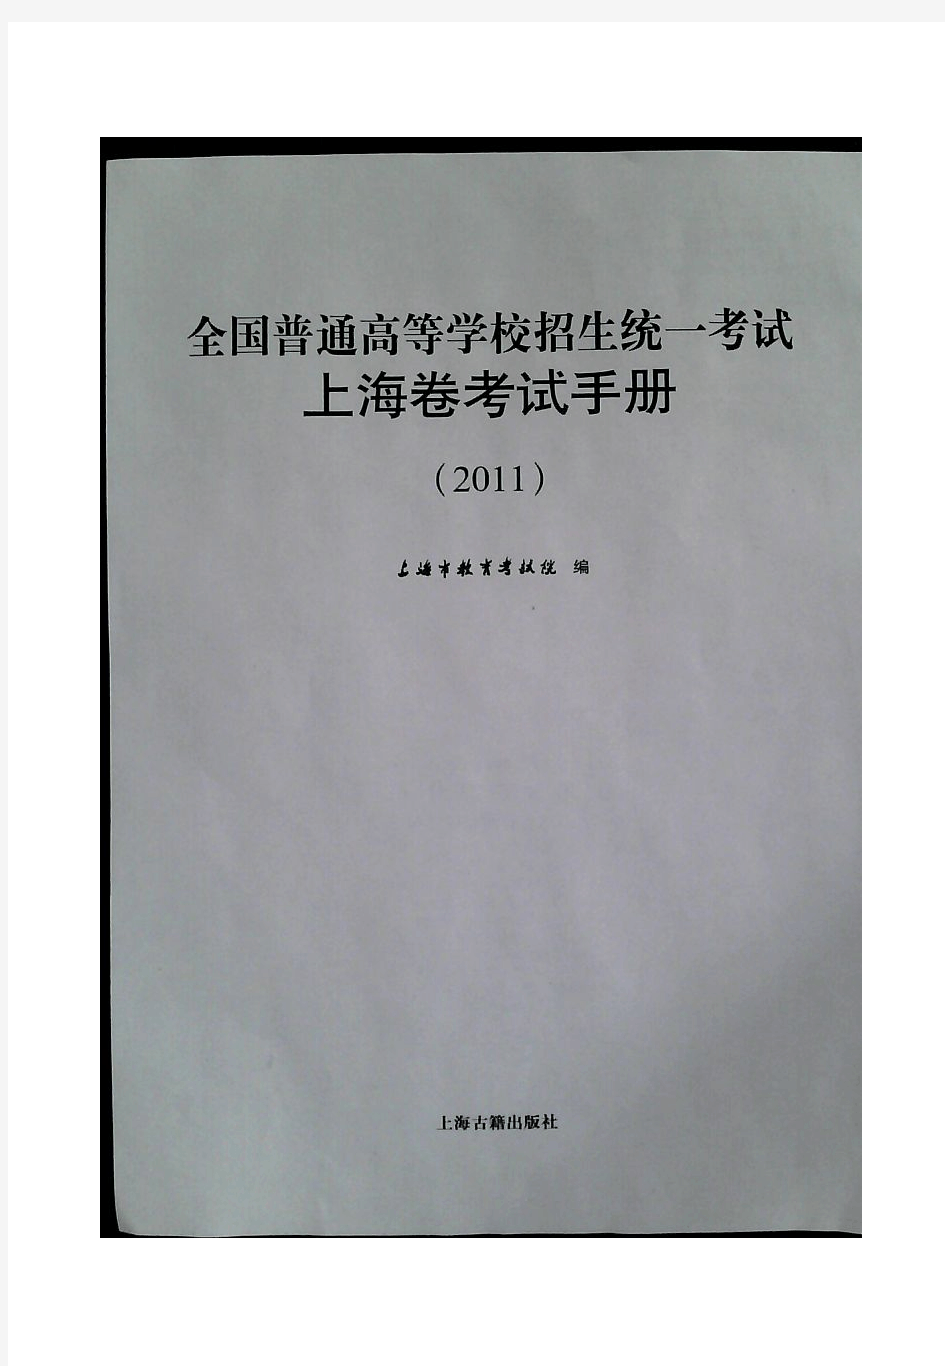 2011年上海高考考纲(完整pdf版)物理